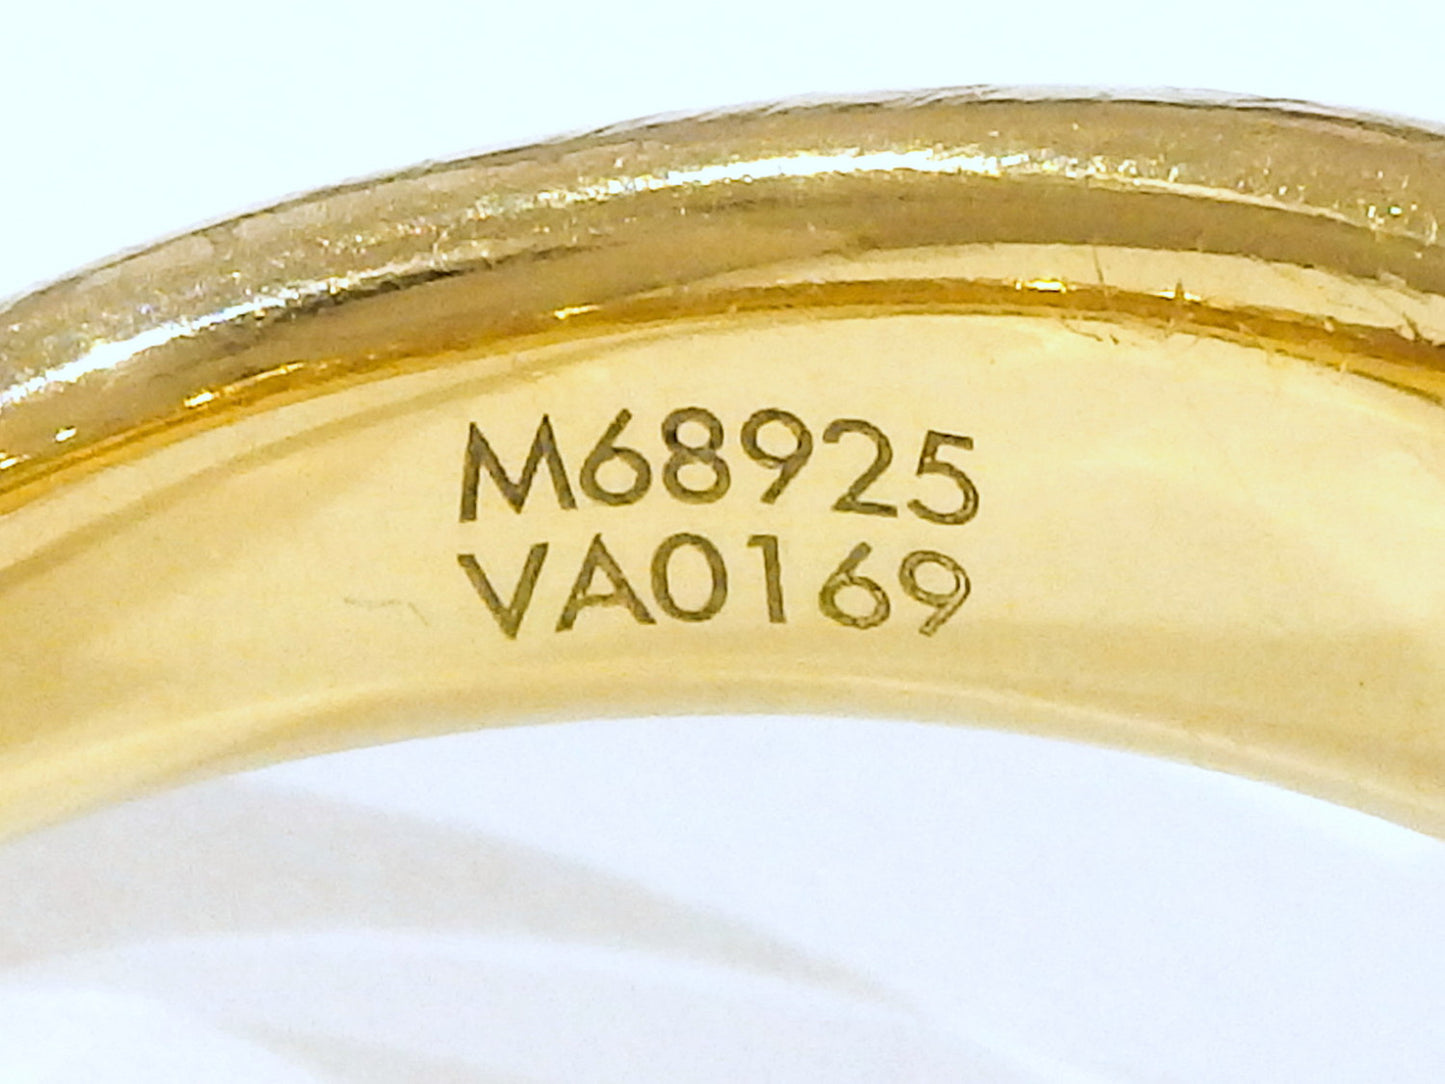 LOUIS VUITTON LV バーグ エッセンシャル リング 指輪 L 15号 M68925